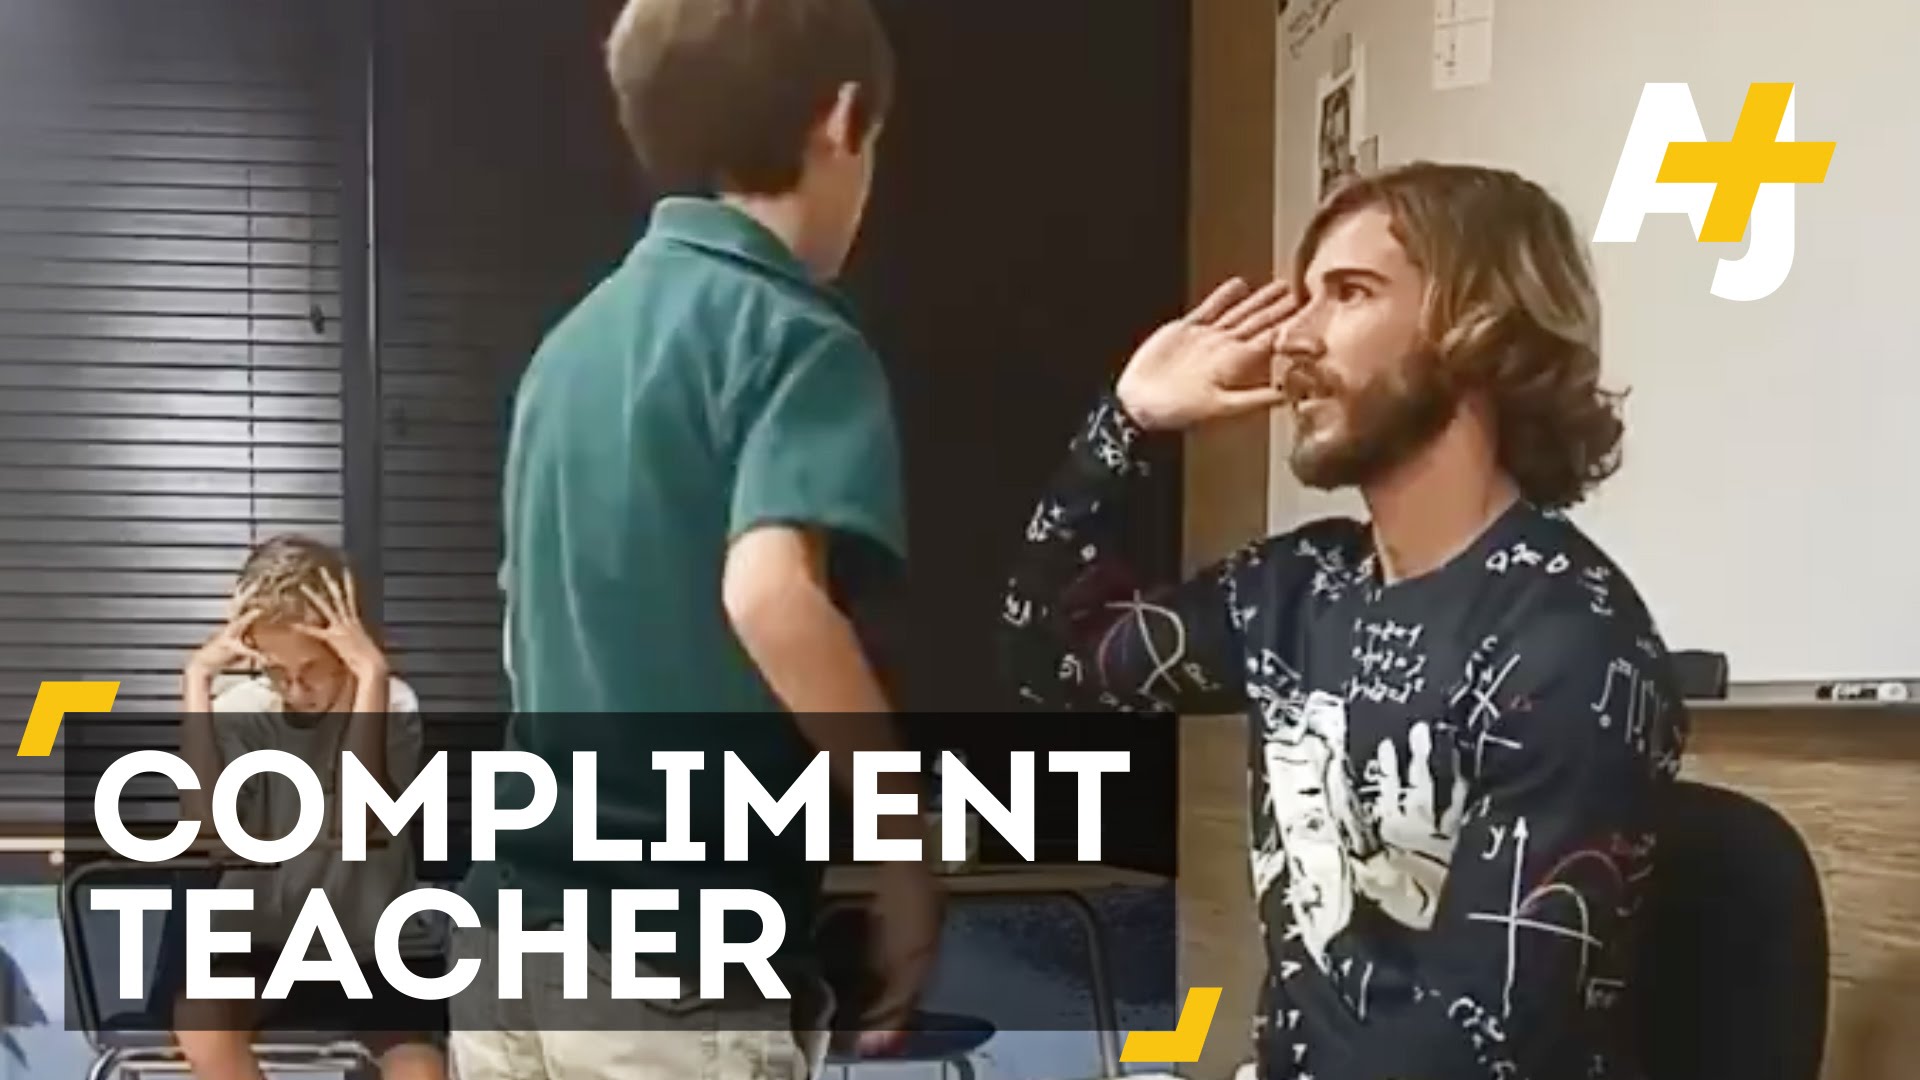 VIDEO: Skolotājs katru rītu sāka ar labu vārdu teikšanu skolēniem. Pēc pāris nedēļām – rezultāti pārsteidza!